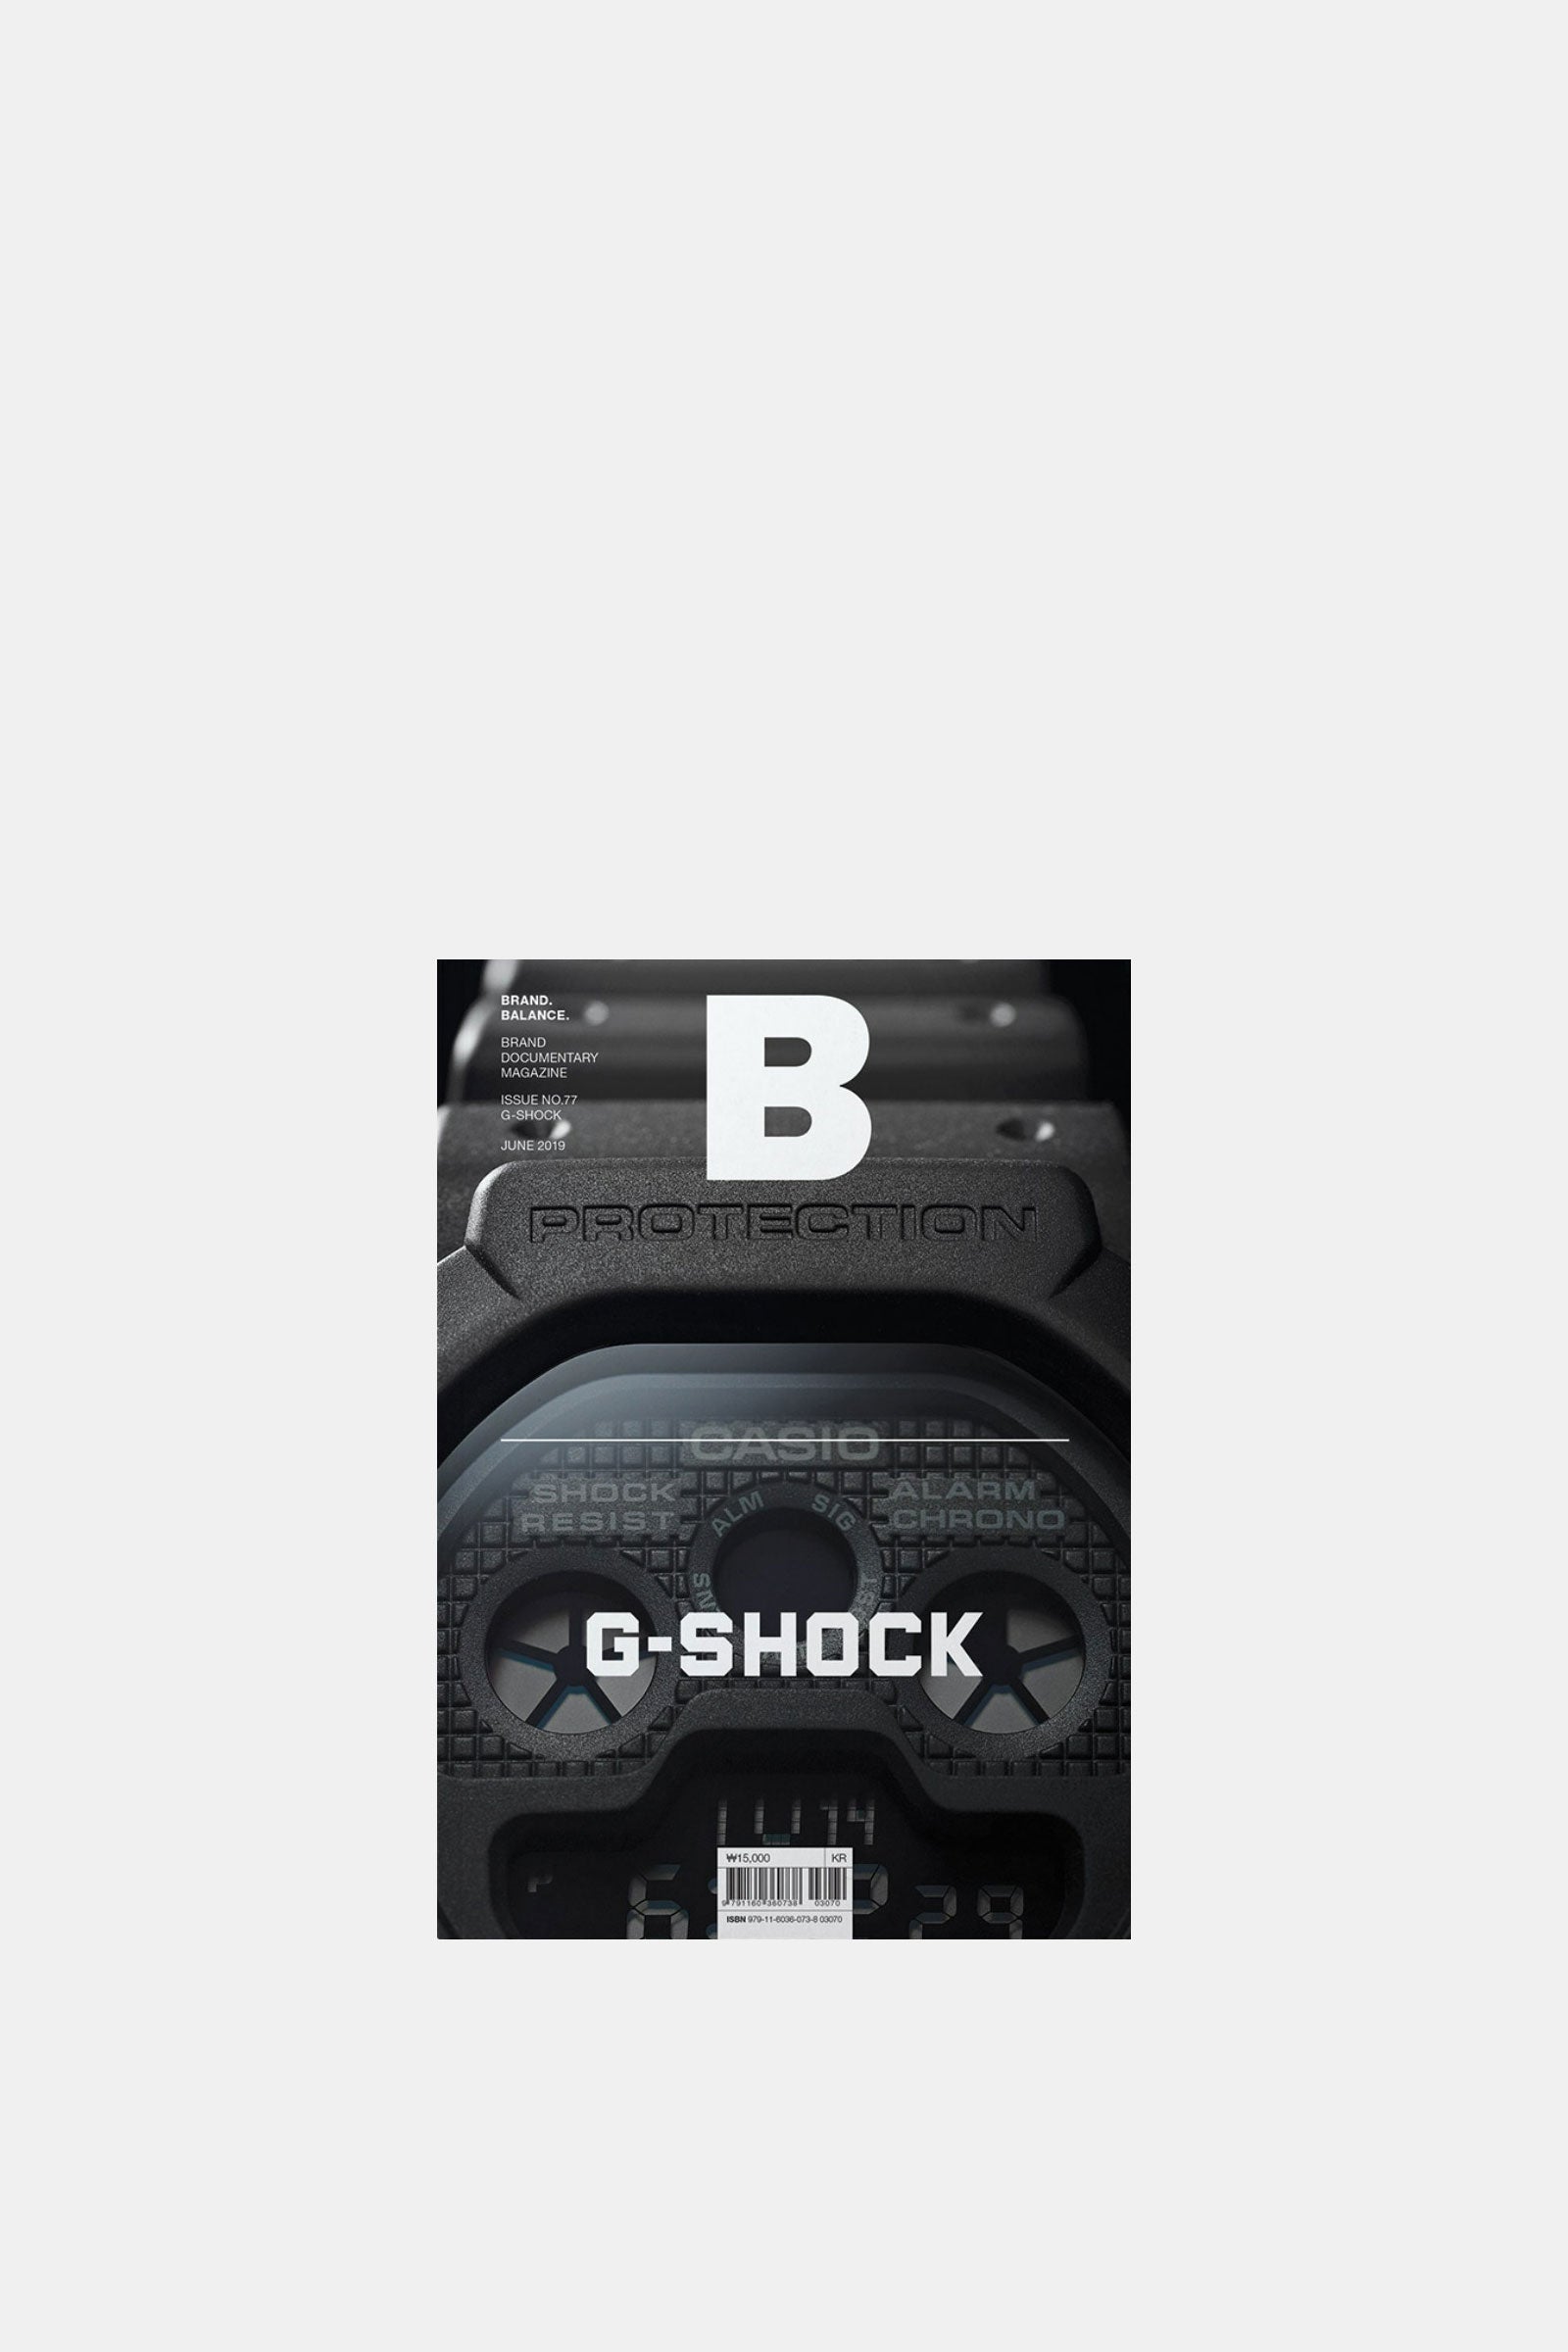 G-Shock - Issue No.77